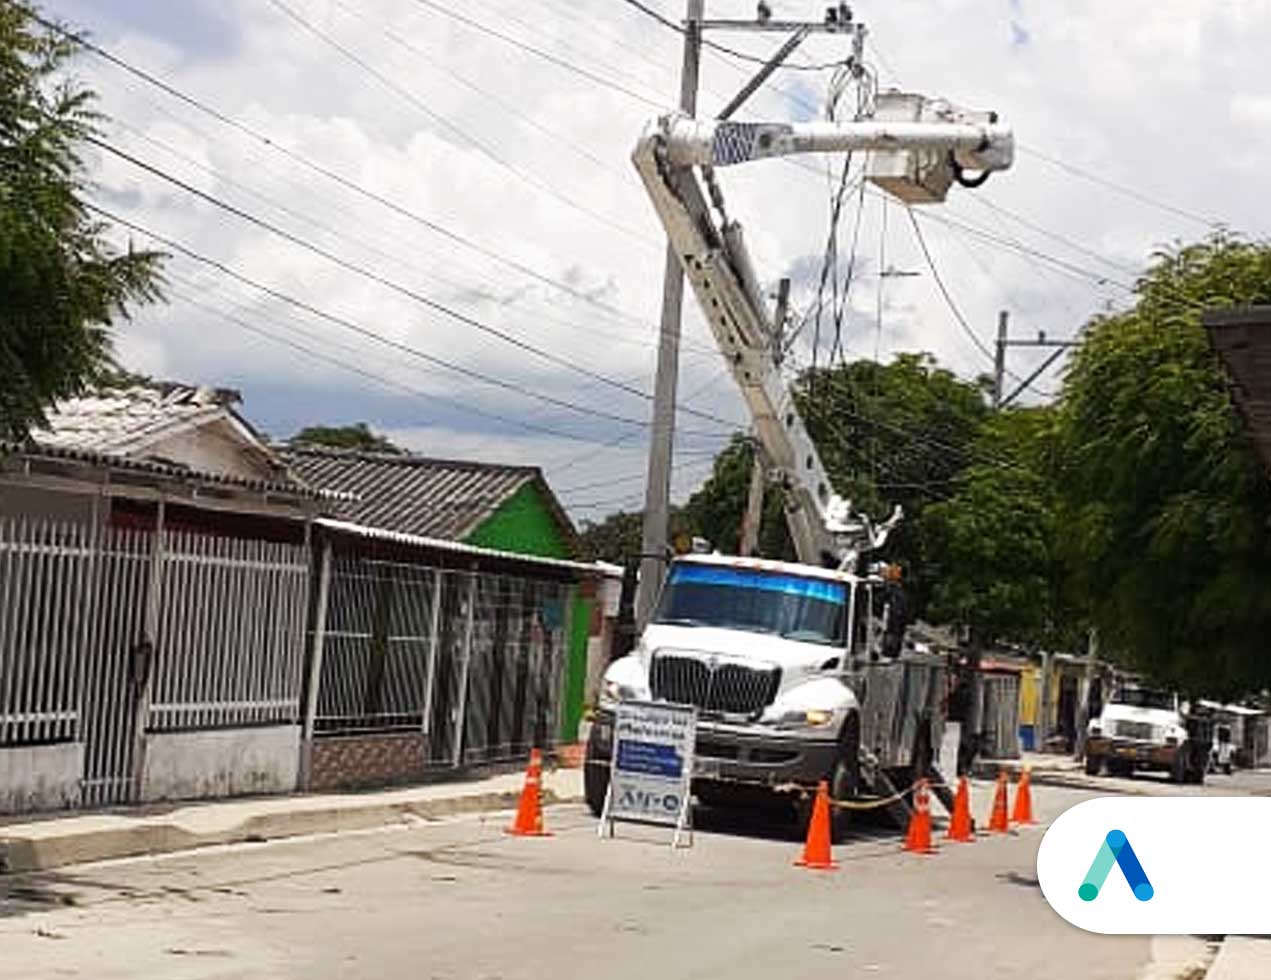 749 familias del barrio El Bosque tendrán nuevas redes eléctrica